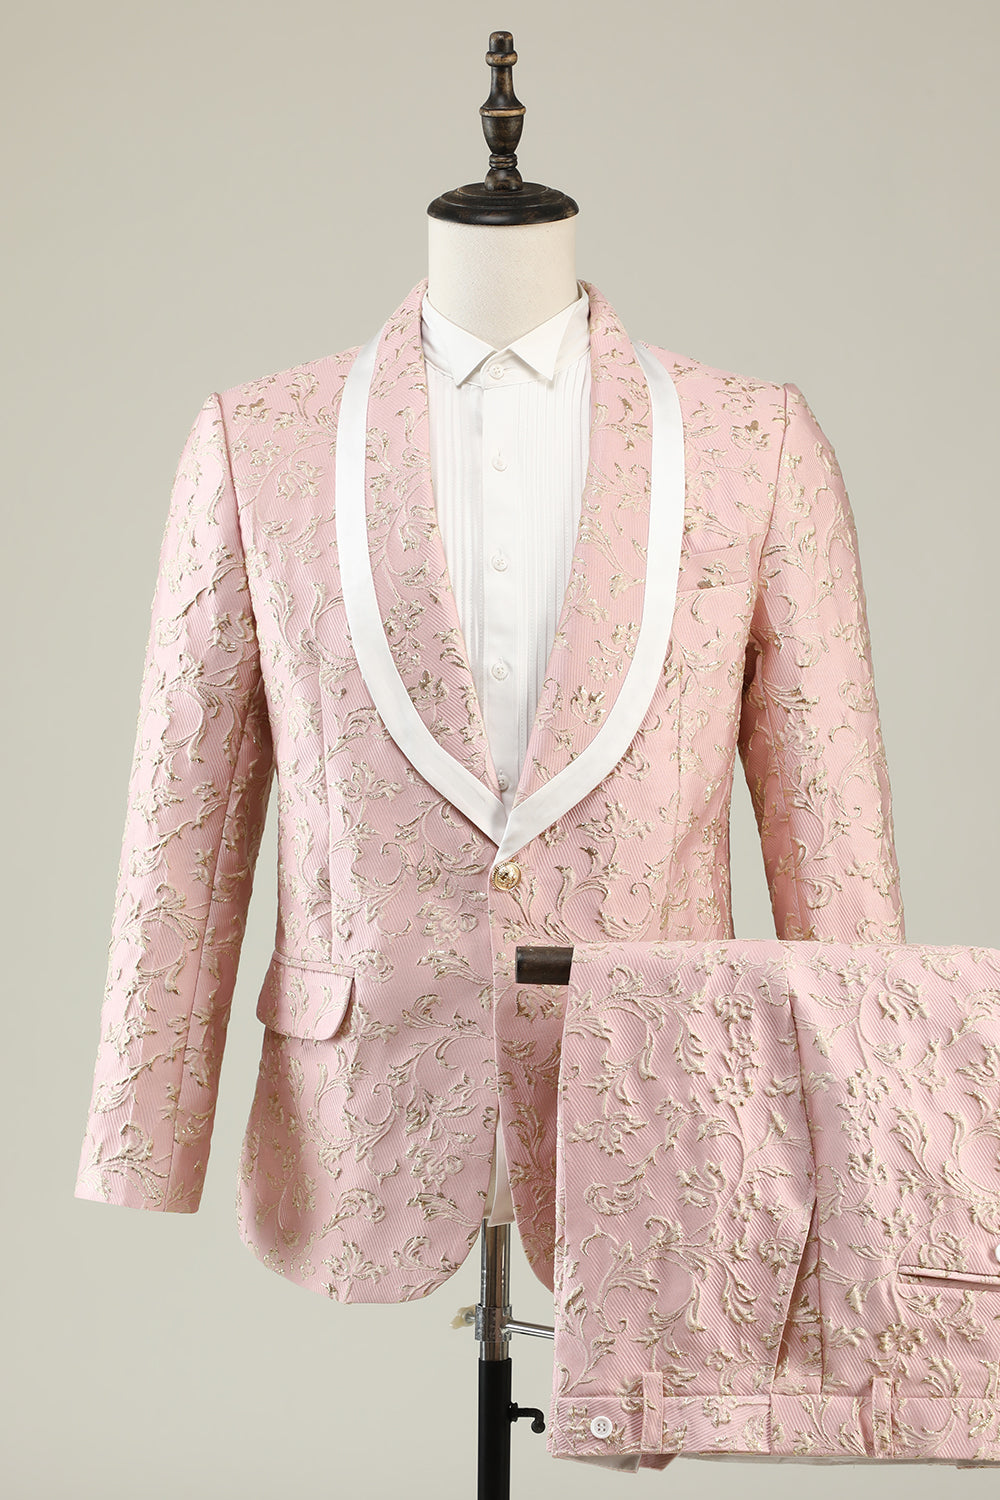 Mint Shawl Lapel One Button Jacquard Men's Prom Suits